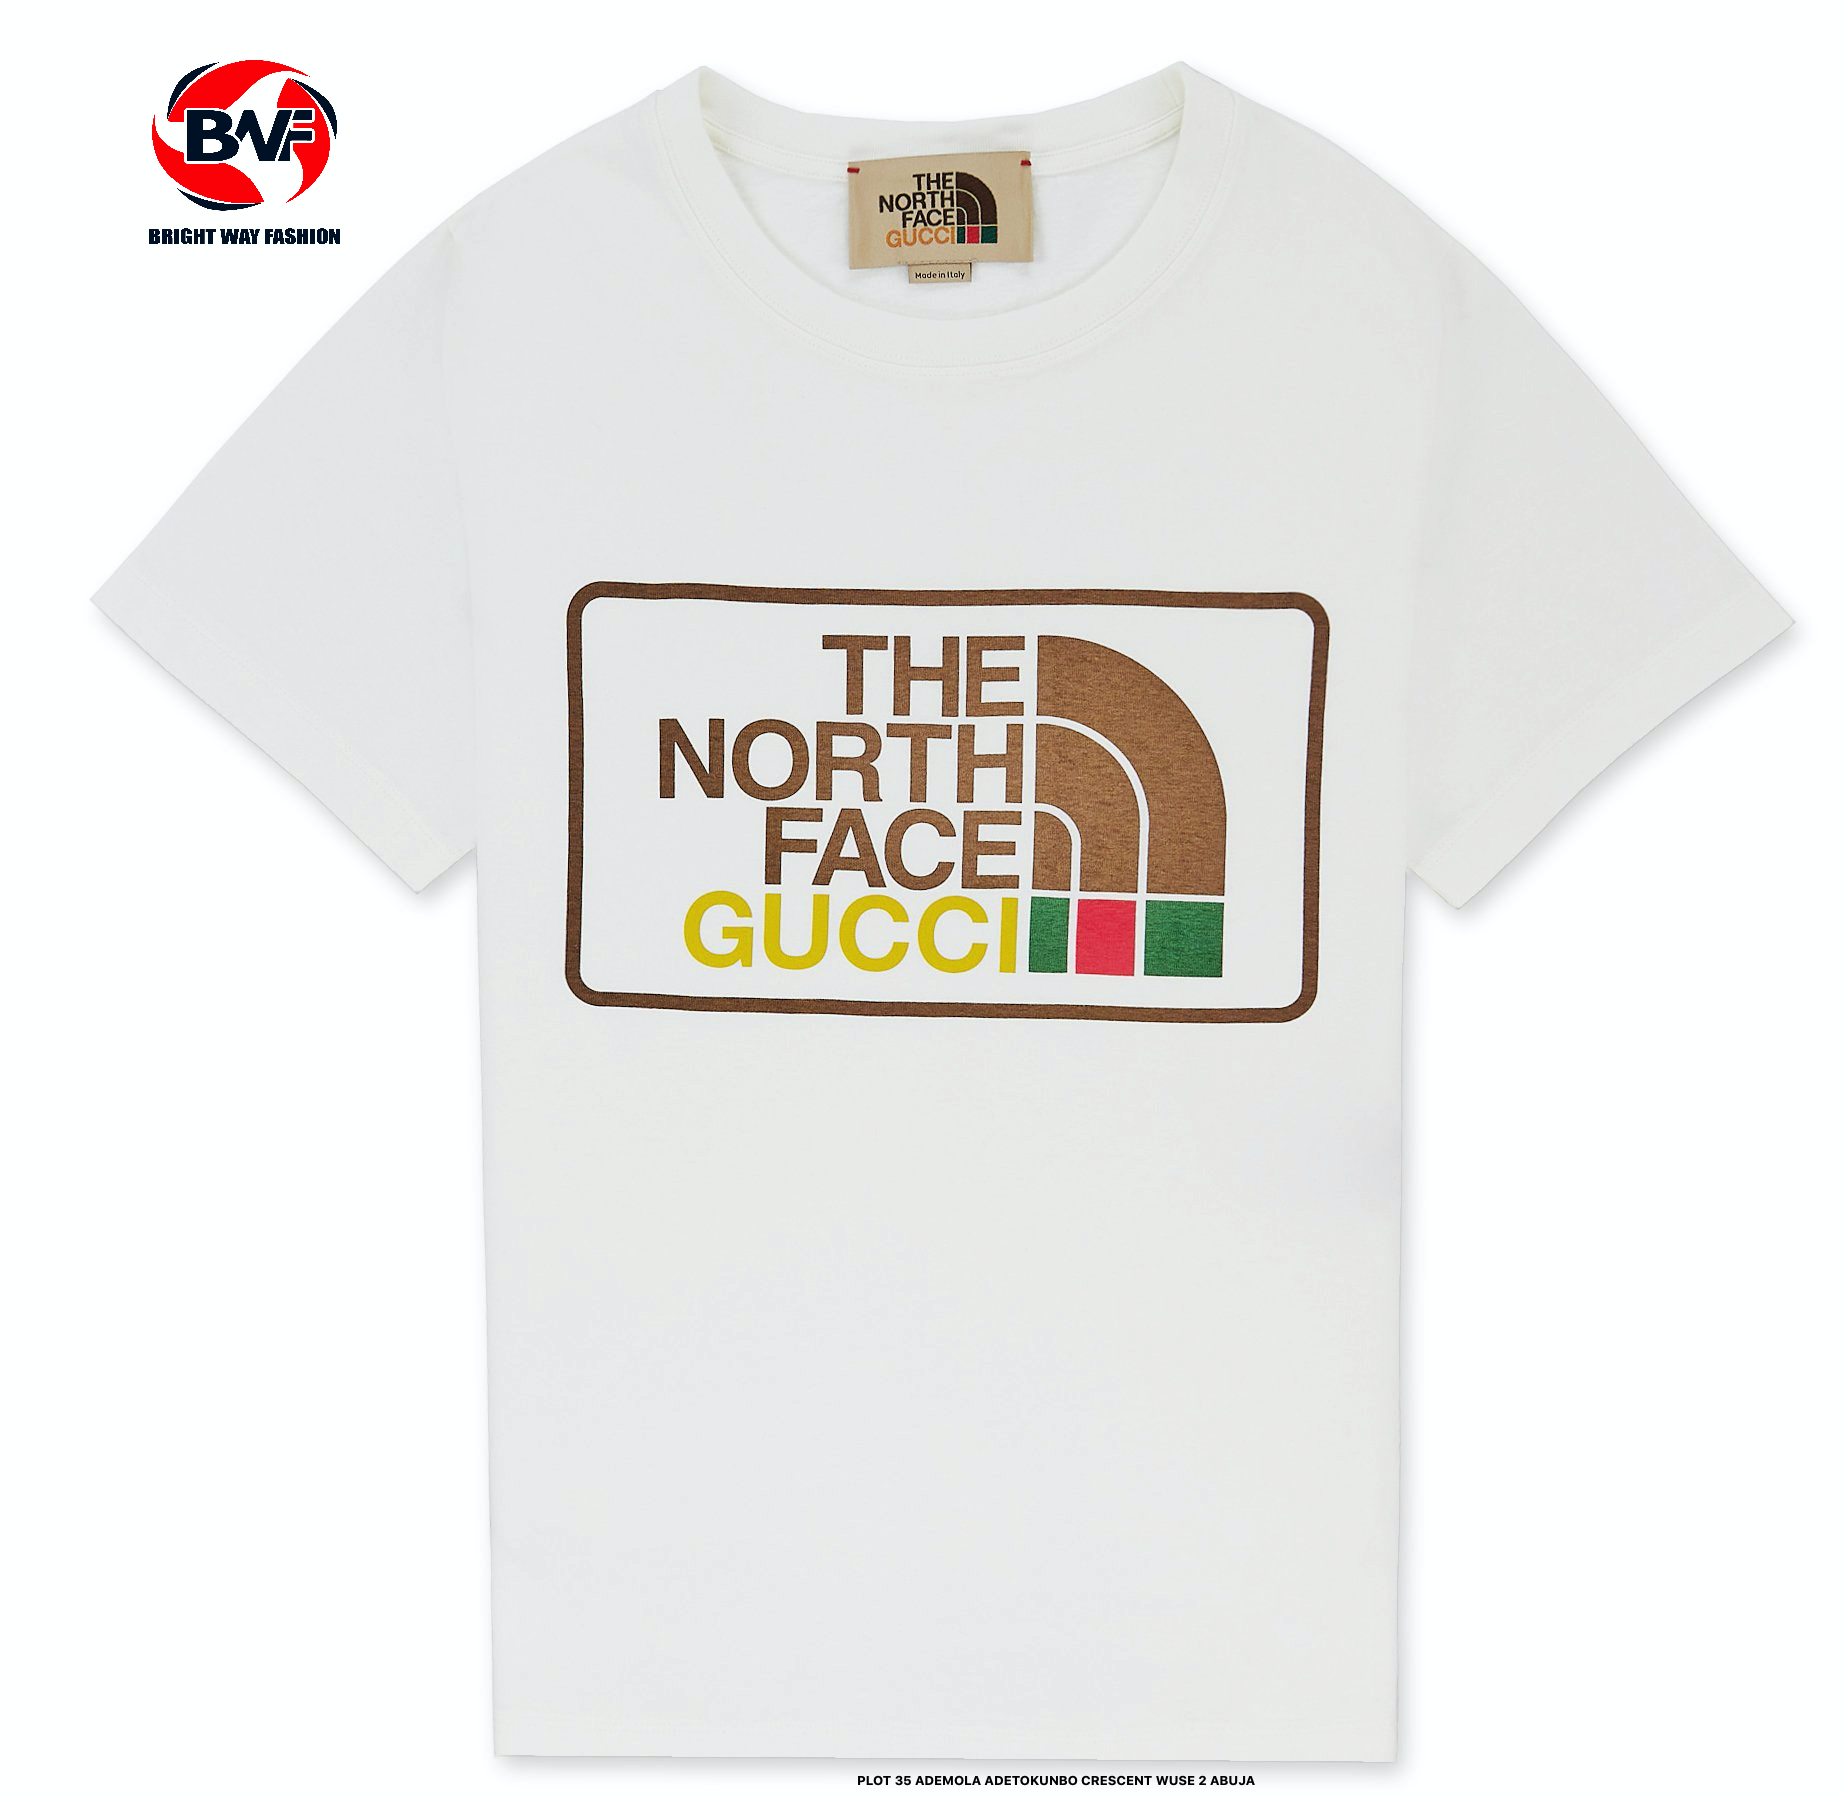 一番の贈り物 グッチ FACE NORTH GUCCI ノースフェイス 黒 Tシャツ Tシャツ/カットソー(半袖/袖なし)